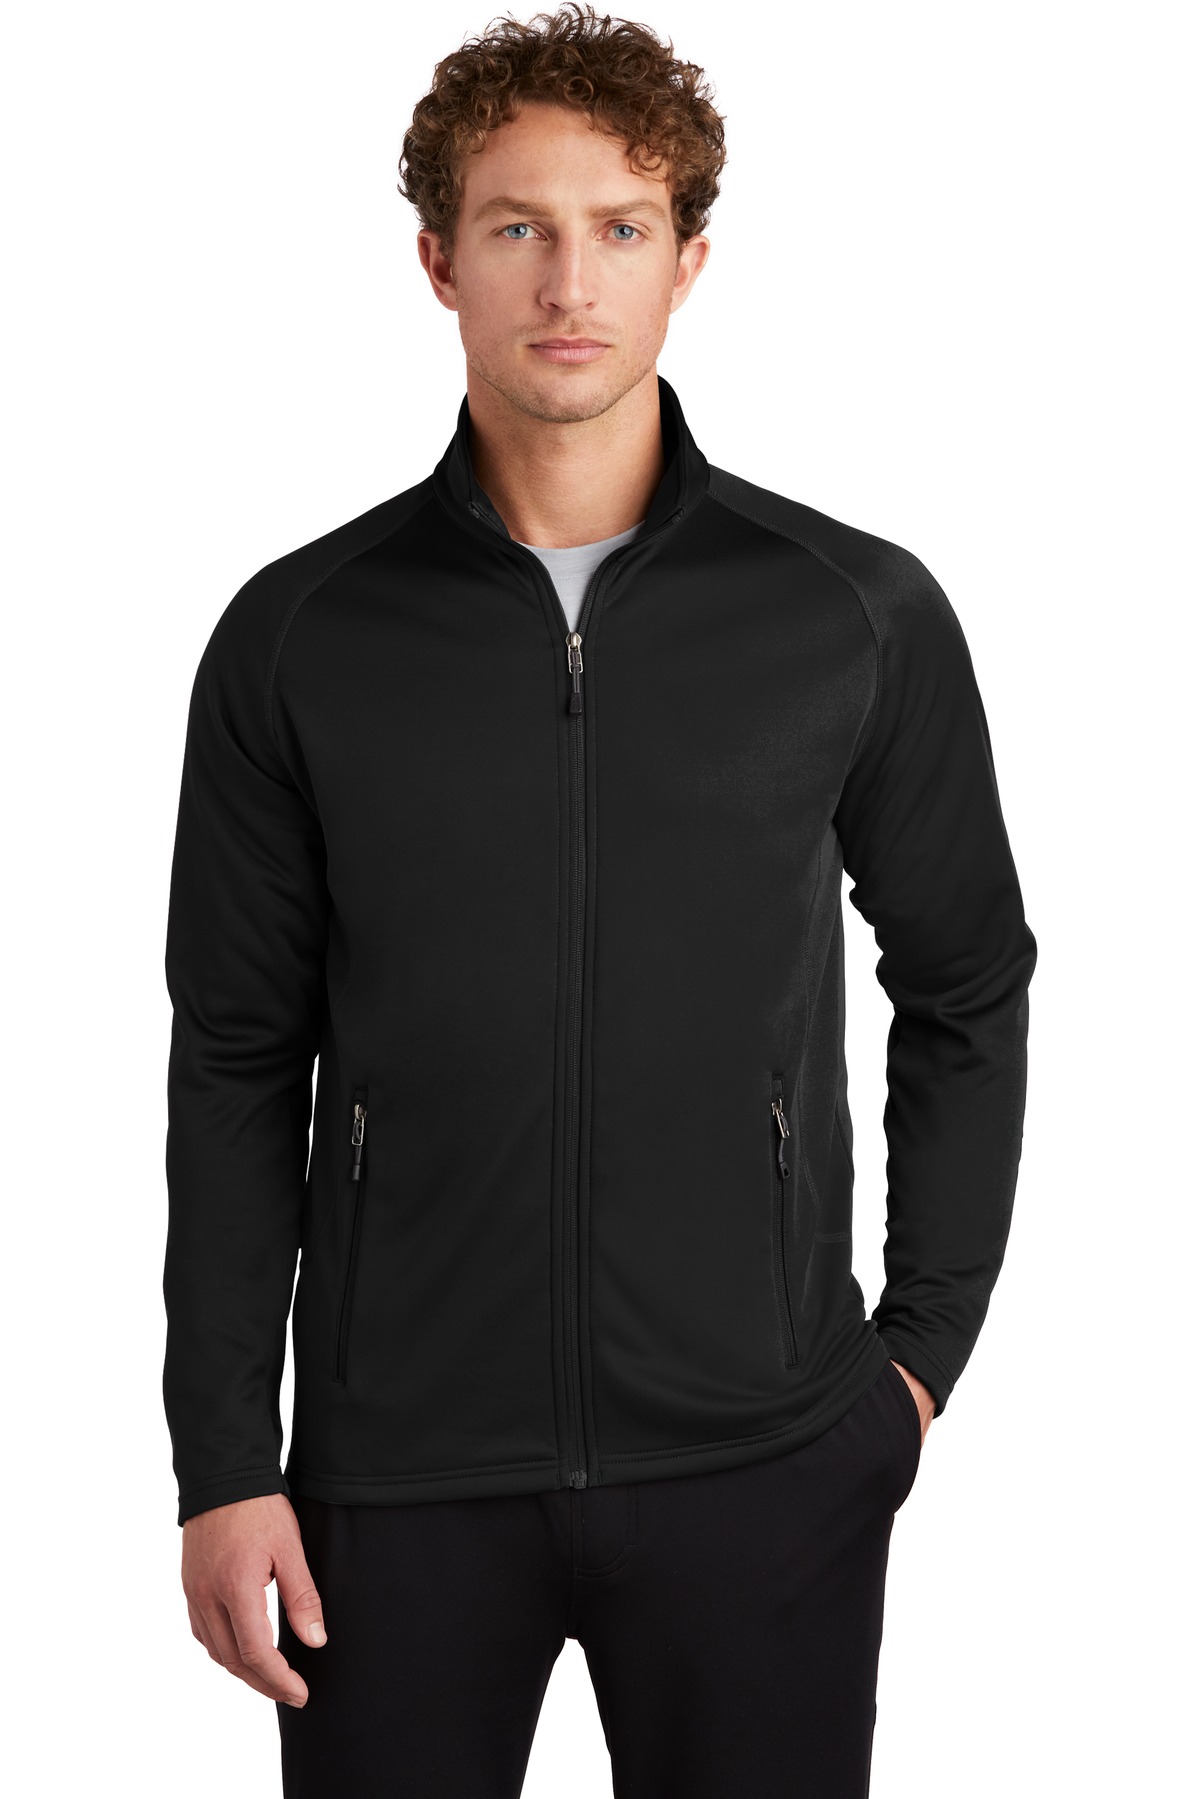 Eddie Bauer Outerwear, Sweat shirts & Fleece for Hospitality ® Smooth Fleece Base Layer Full-Zip.-Eddie Bauer